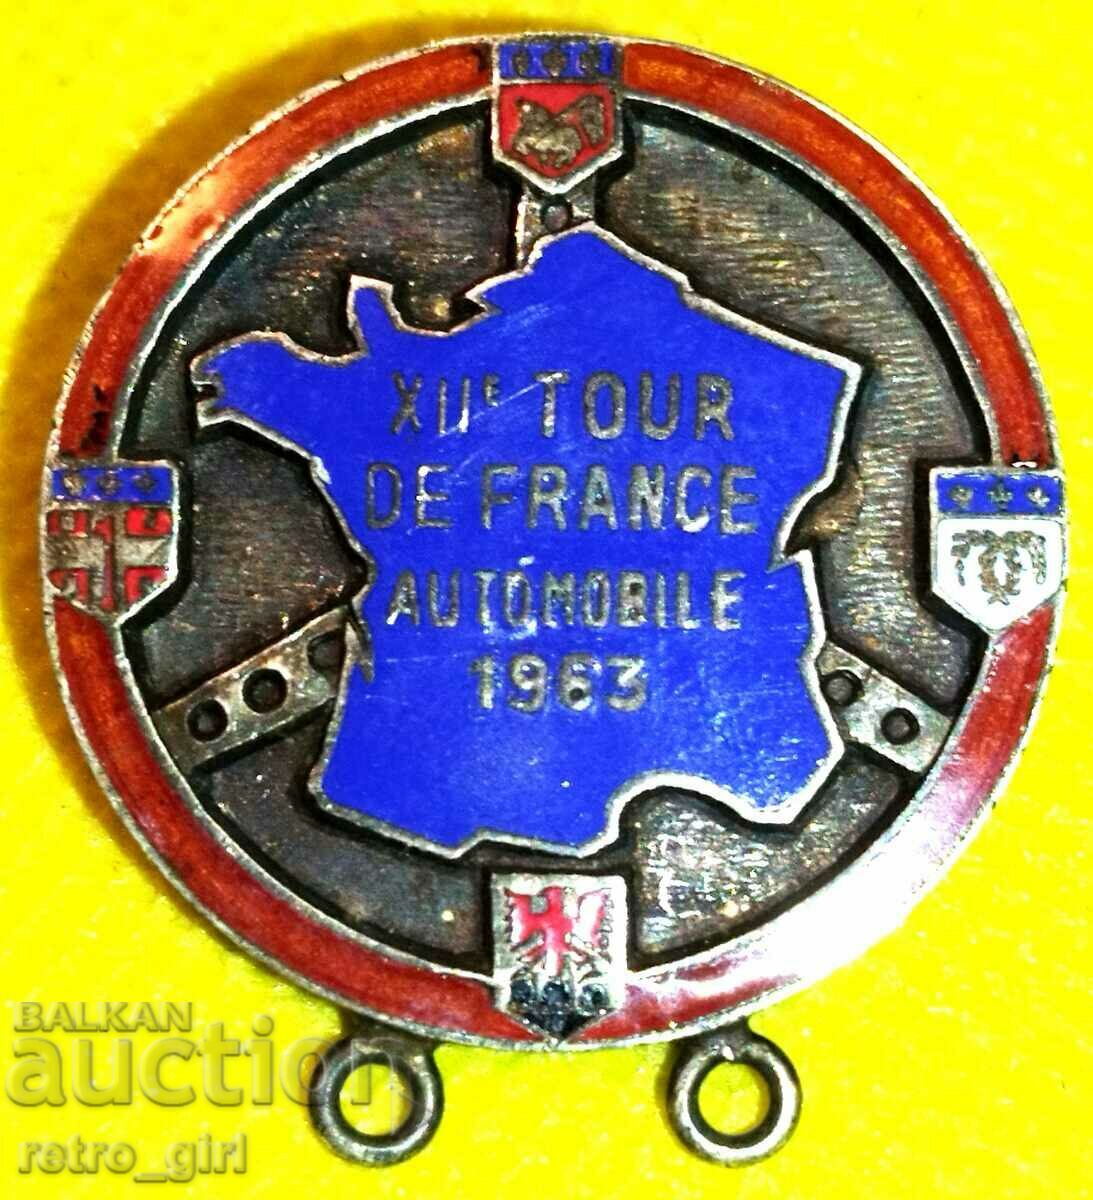 Old Tour de France sign - 1963